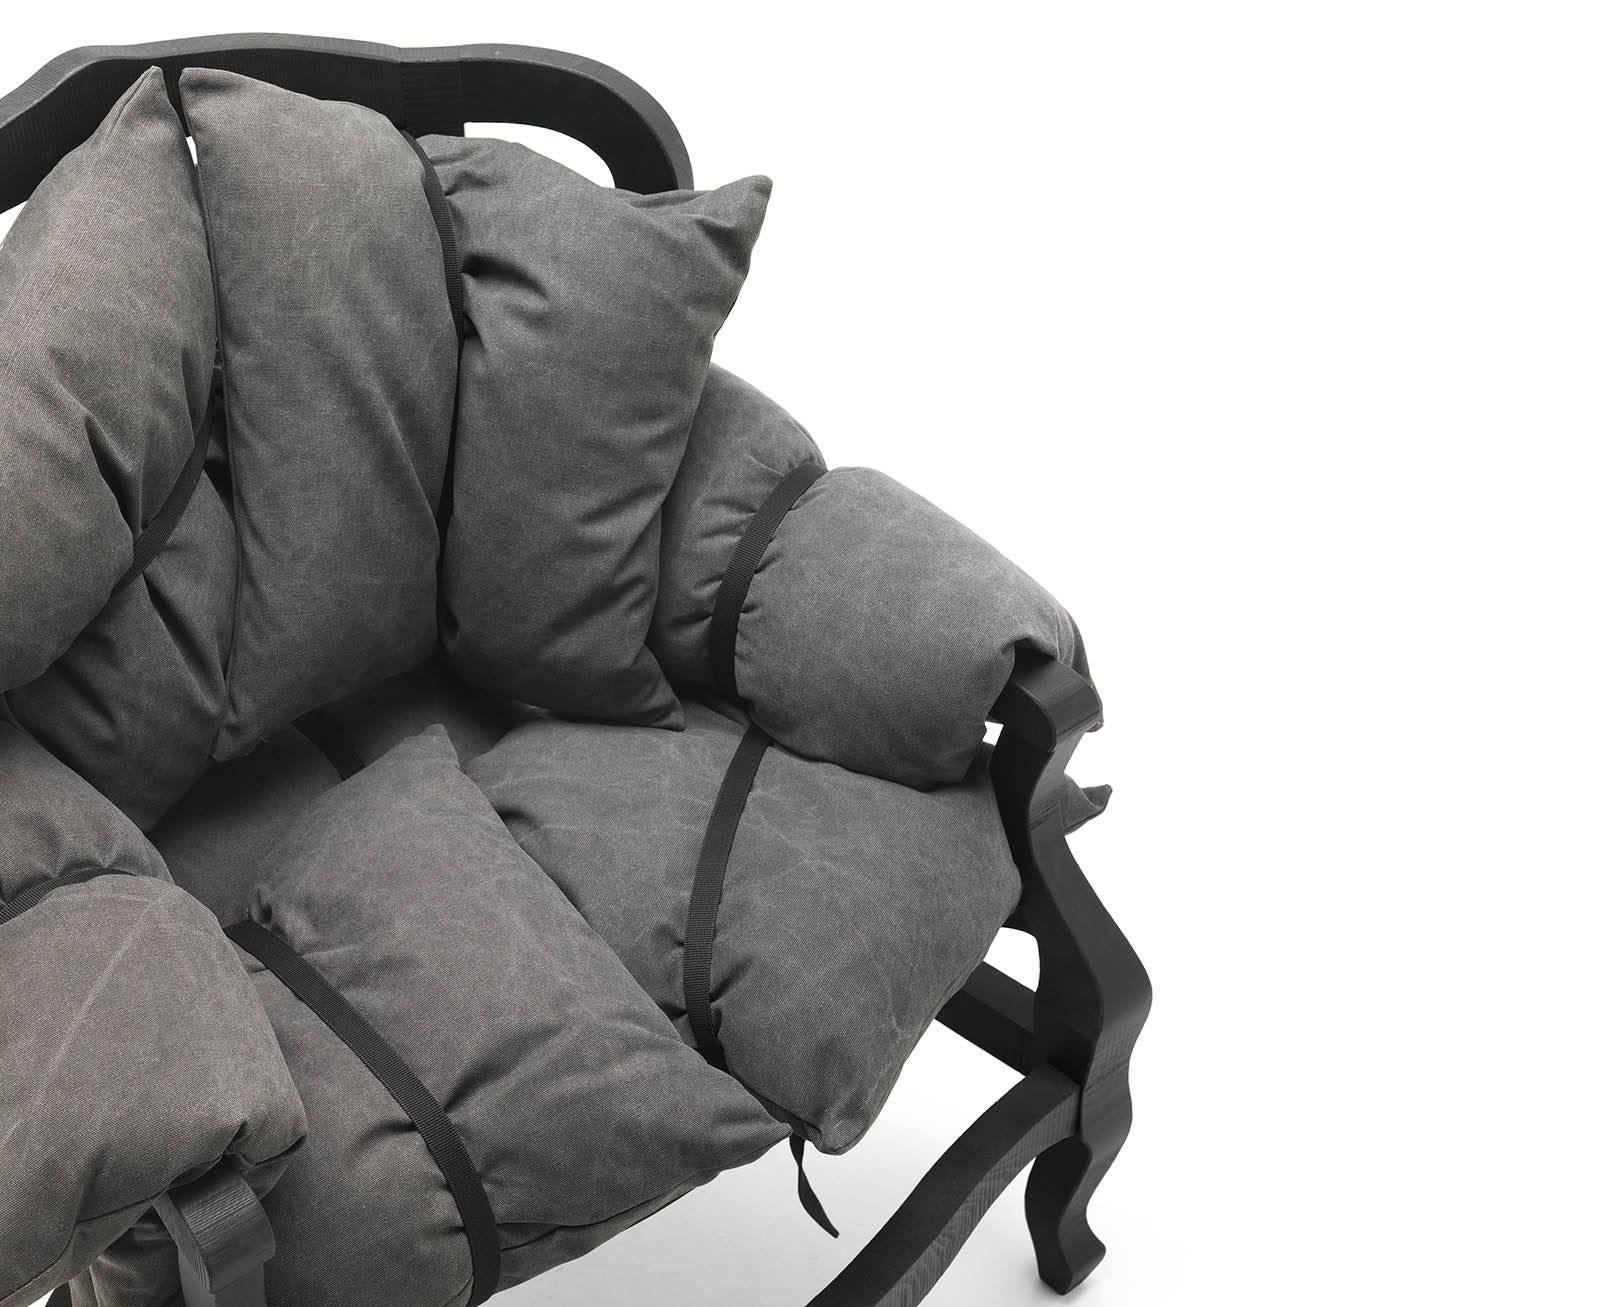 Der Stuhl 7 Pillows wurde vom Designer Marcantonio Raimondi Malerba entworfen und wird von der Marke Mogg hergestellt. Sessel aus massivem Buchenholz, erhältlich in den Ausführungen natur und schwarz lackiert, komplett mit sieben abnehmbaren Kissen